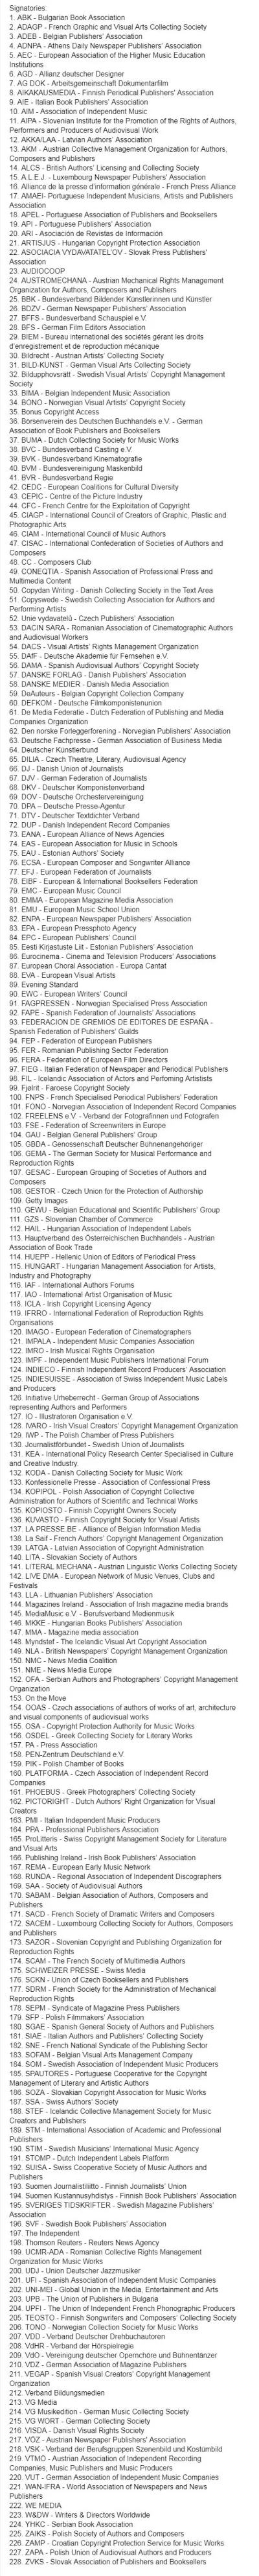 lewoprawo - Pełna lista organizacji apelujących wprowadzenie tych przepisów: